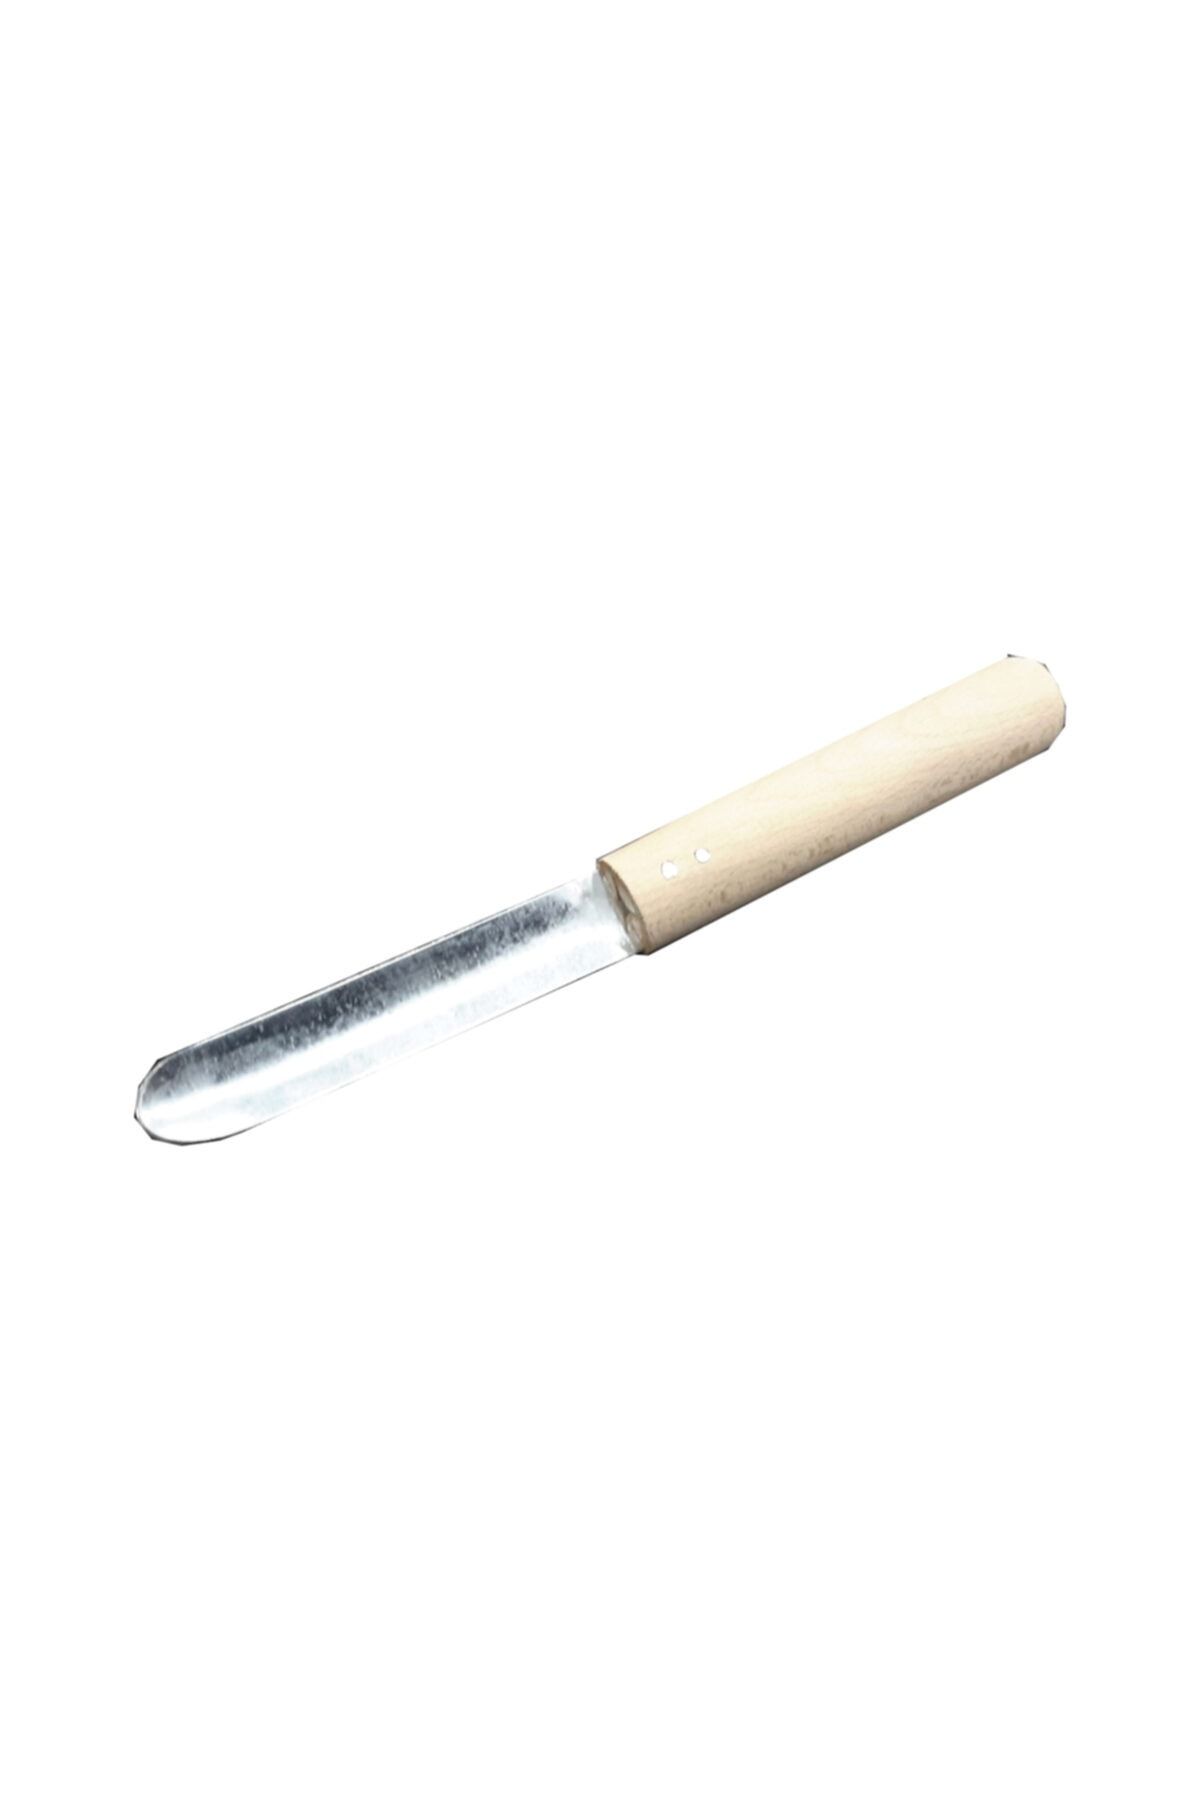 sezgin Patlıcan Oyma Bıçağı-20cm